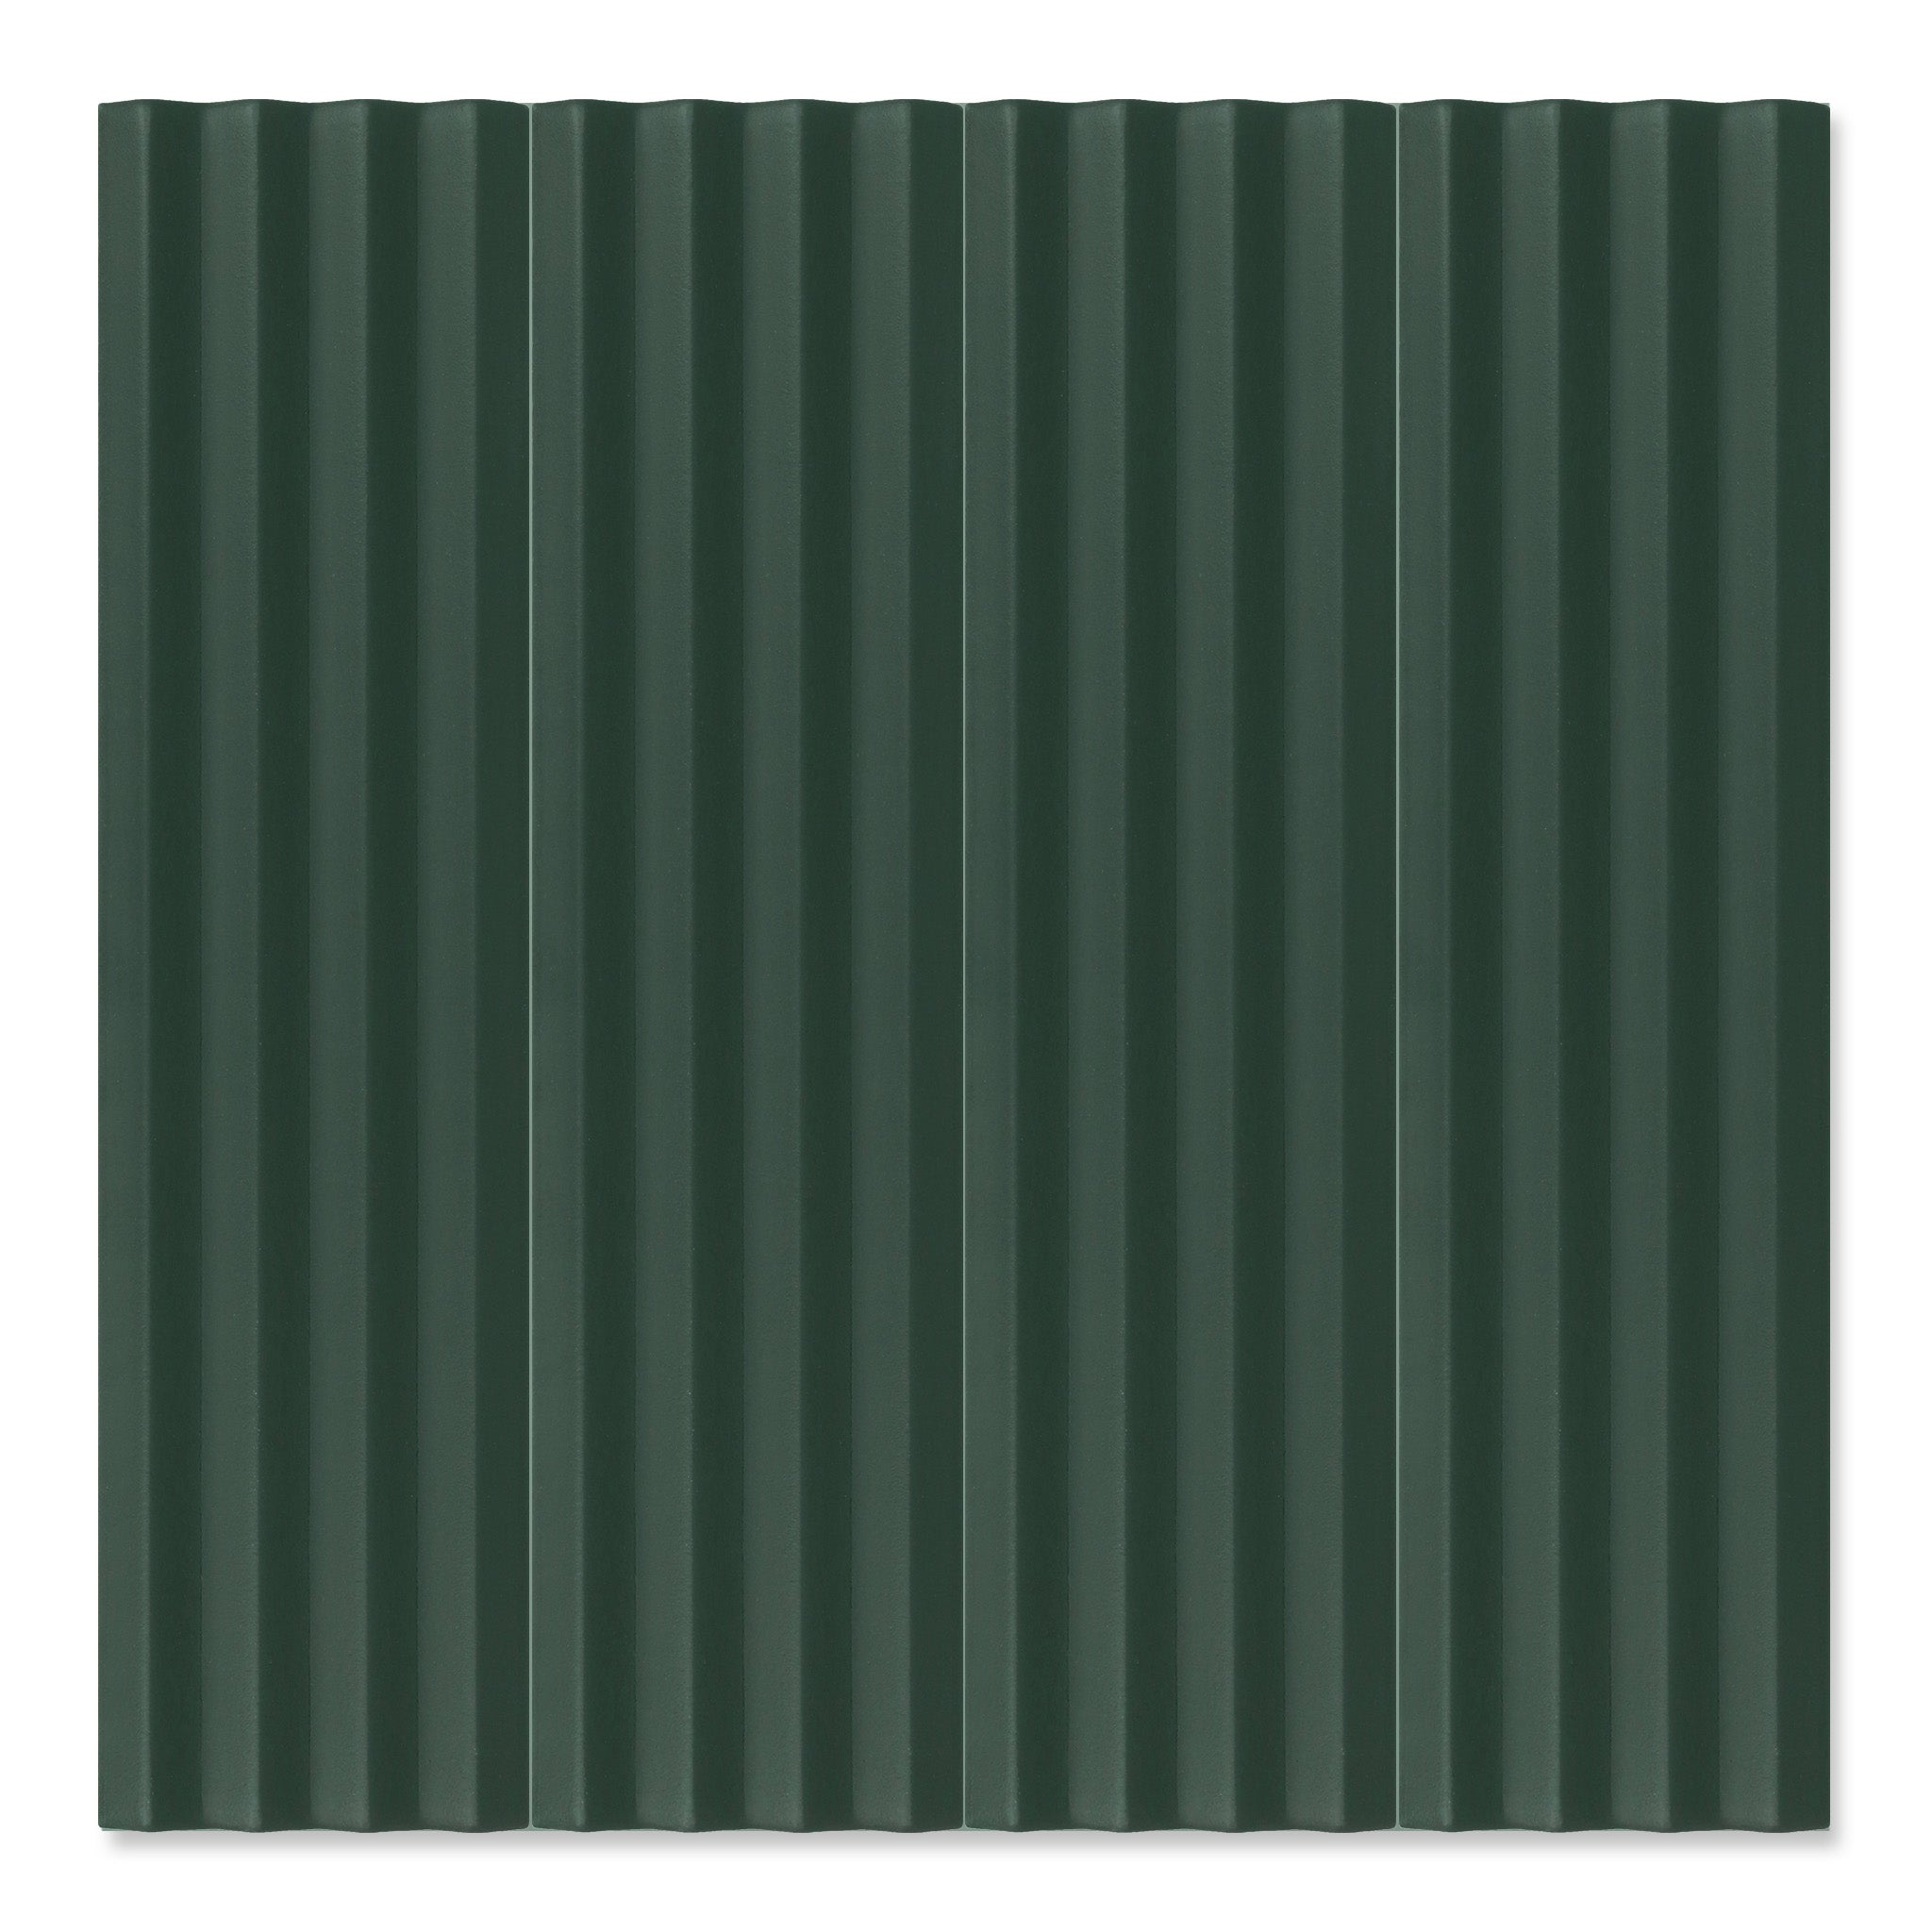 Fluted Emerald Decor - Green Modern Feature Wall Tiles for Bathrooms & Kitchens - 5 x 20 cm - Matt Porcelain